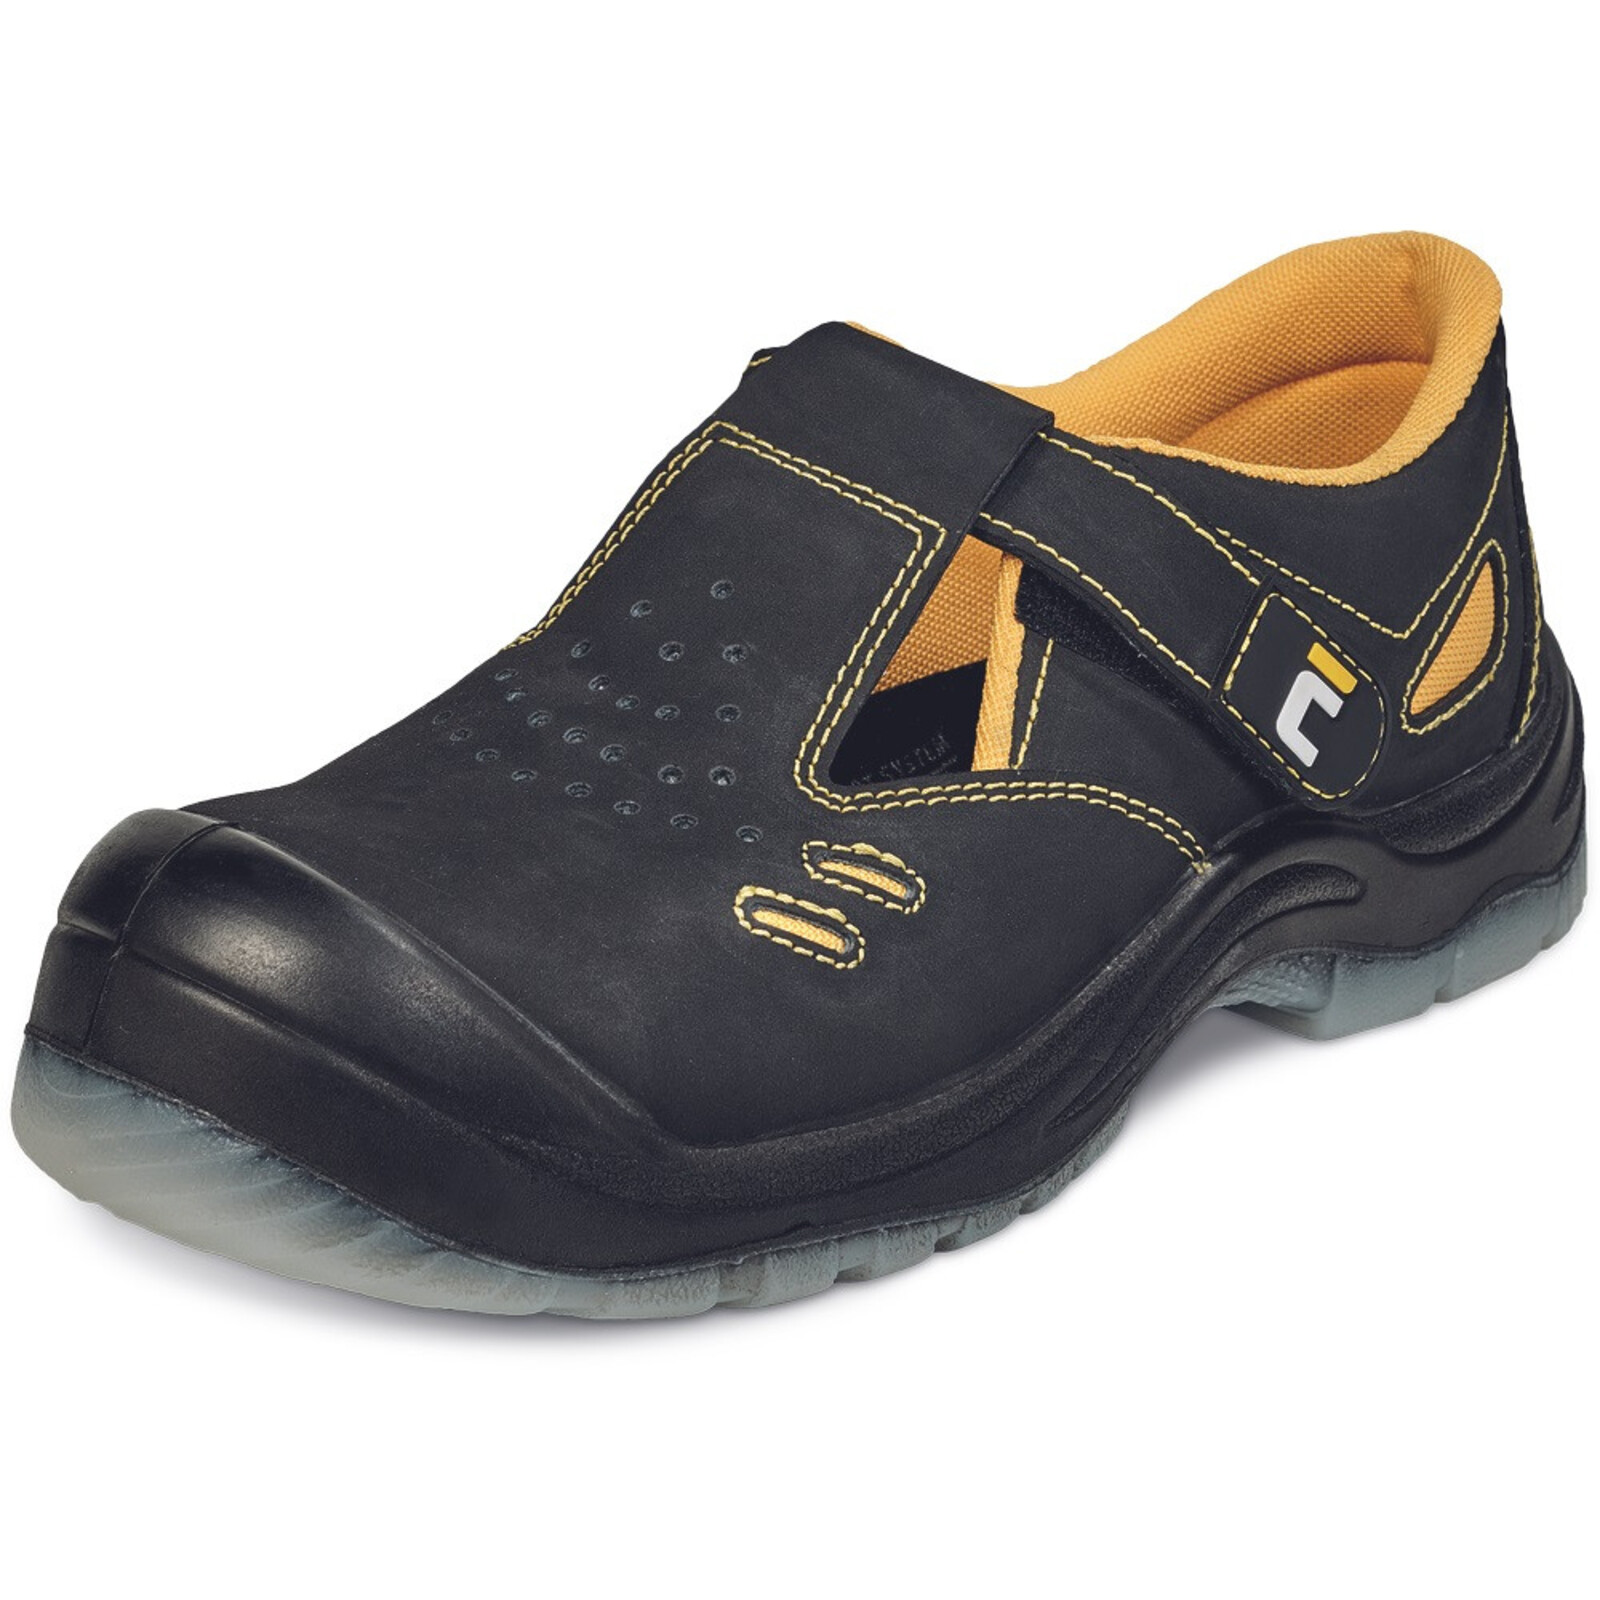 Bezpečnostné sandále Cerva BK TPU MF S1P SRC - veľkosť: 37, farba: čierna/žltá